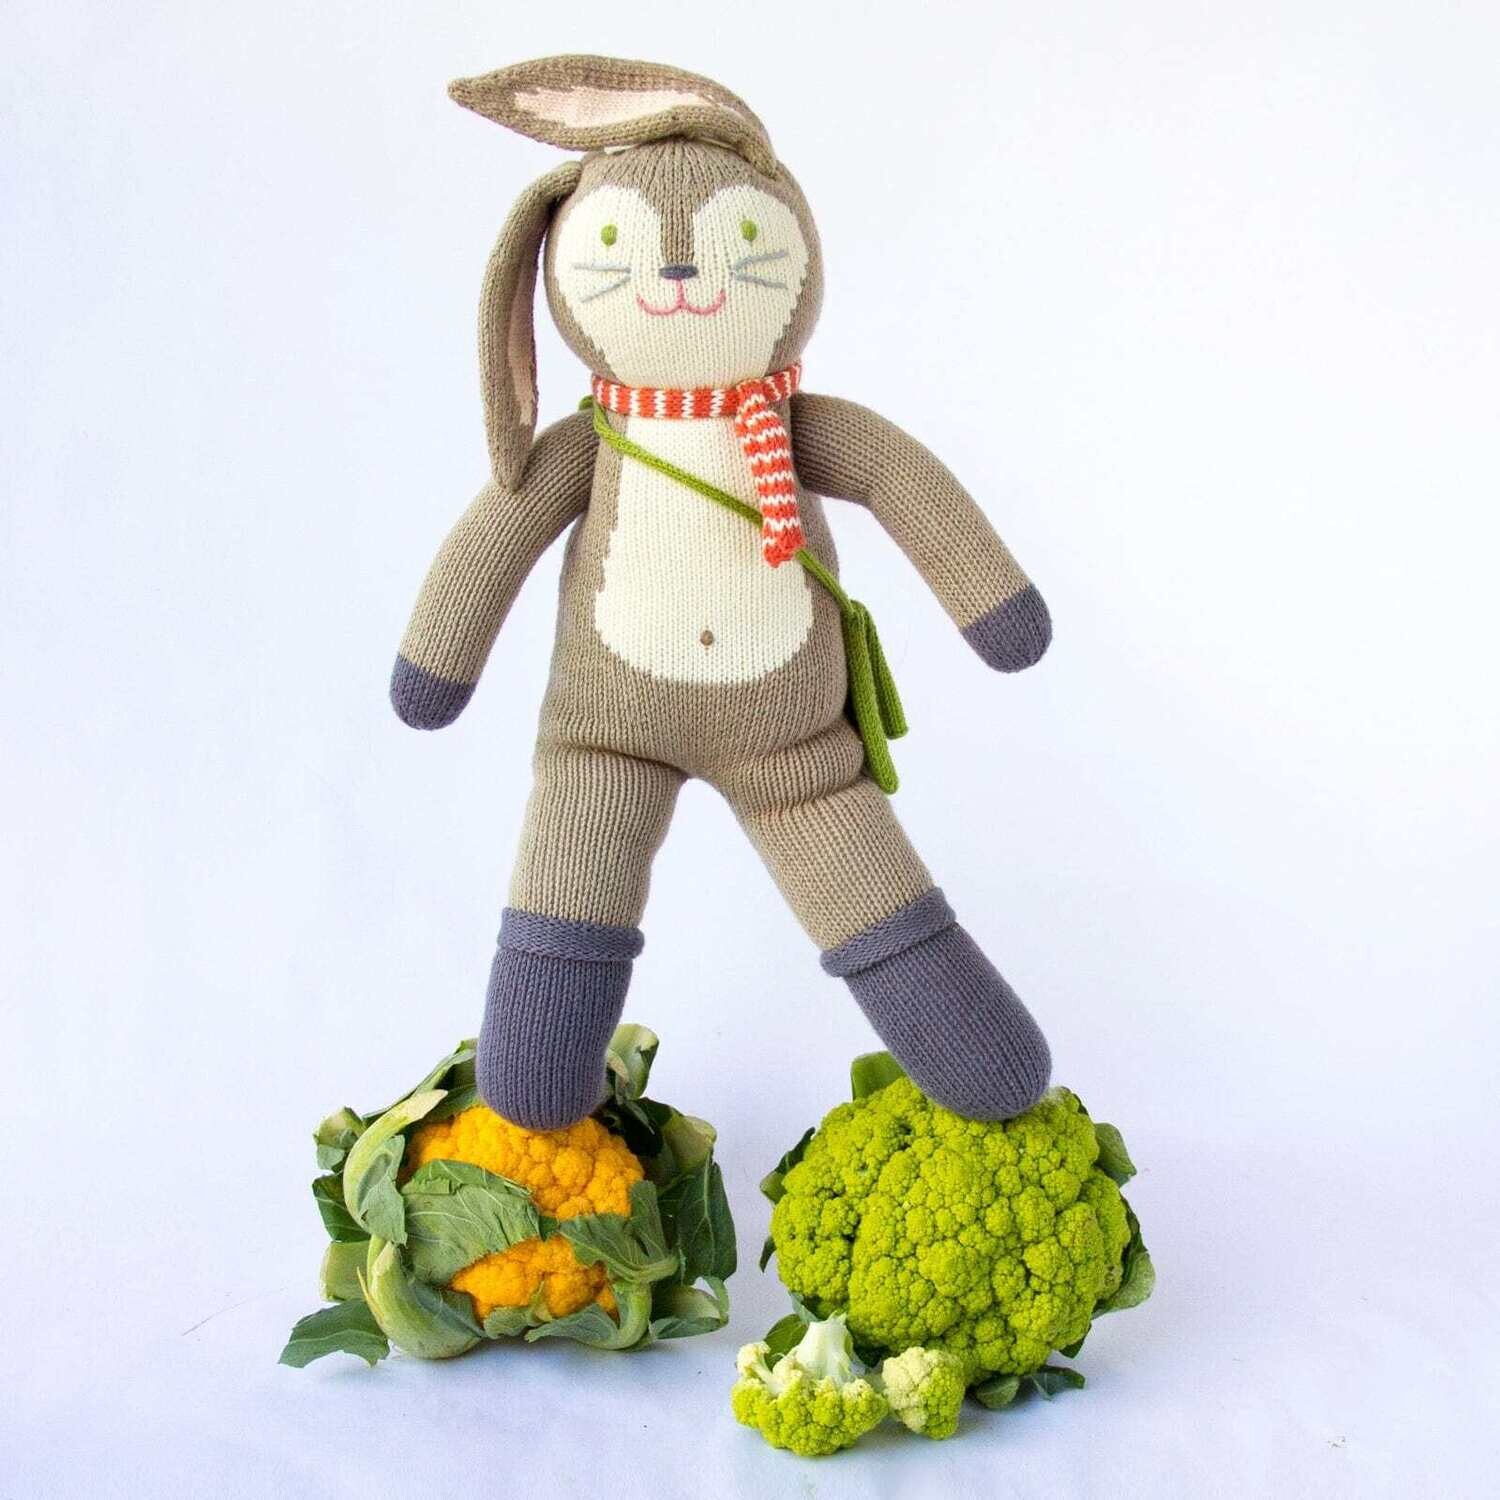 Blabla Kids Doll - Pierre the Bunny, Size: Mini - 30cm